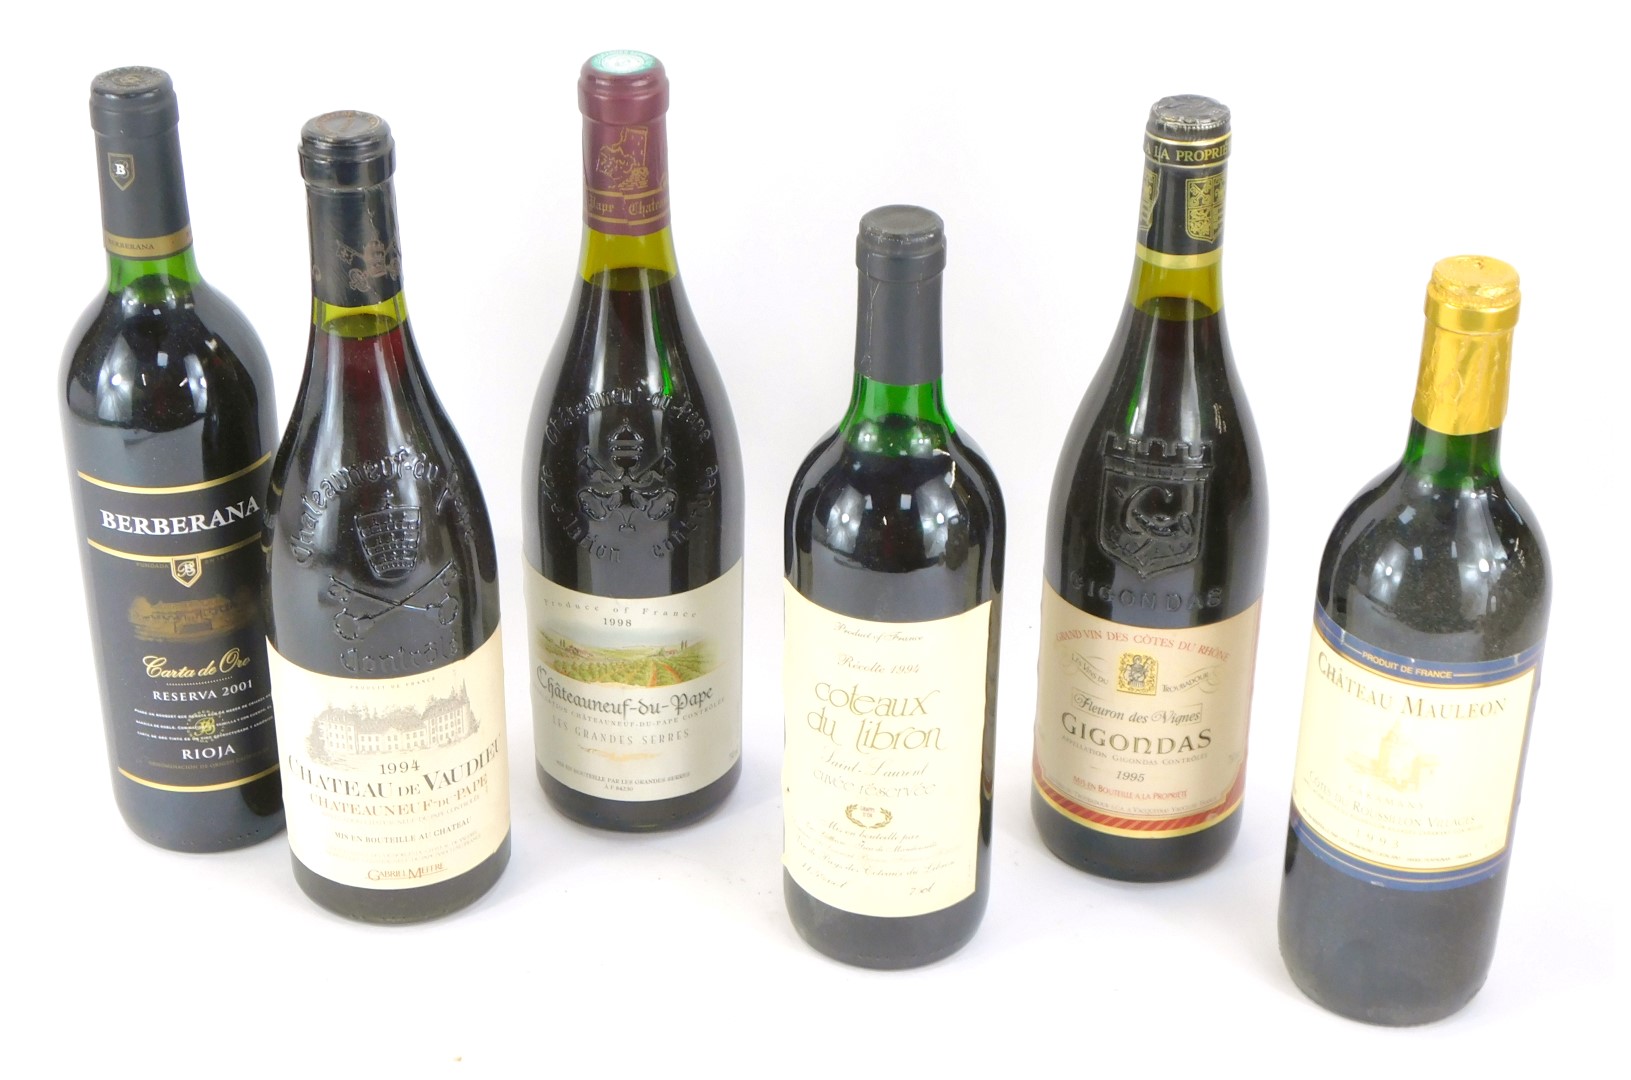 Six bottles of wine, comprising a Chateau du Vaudieu Chateauneuf-du-Pape 1994, a Cotaux du Libron Re